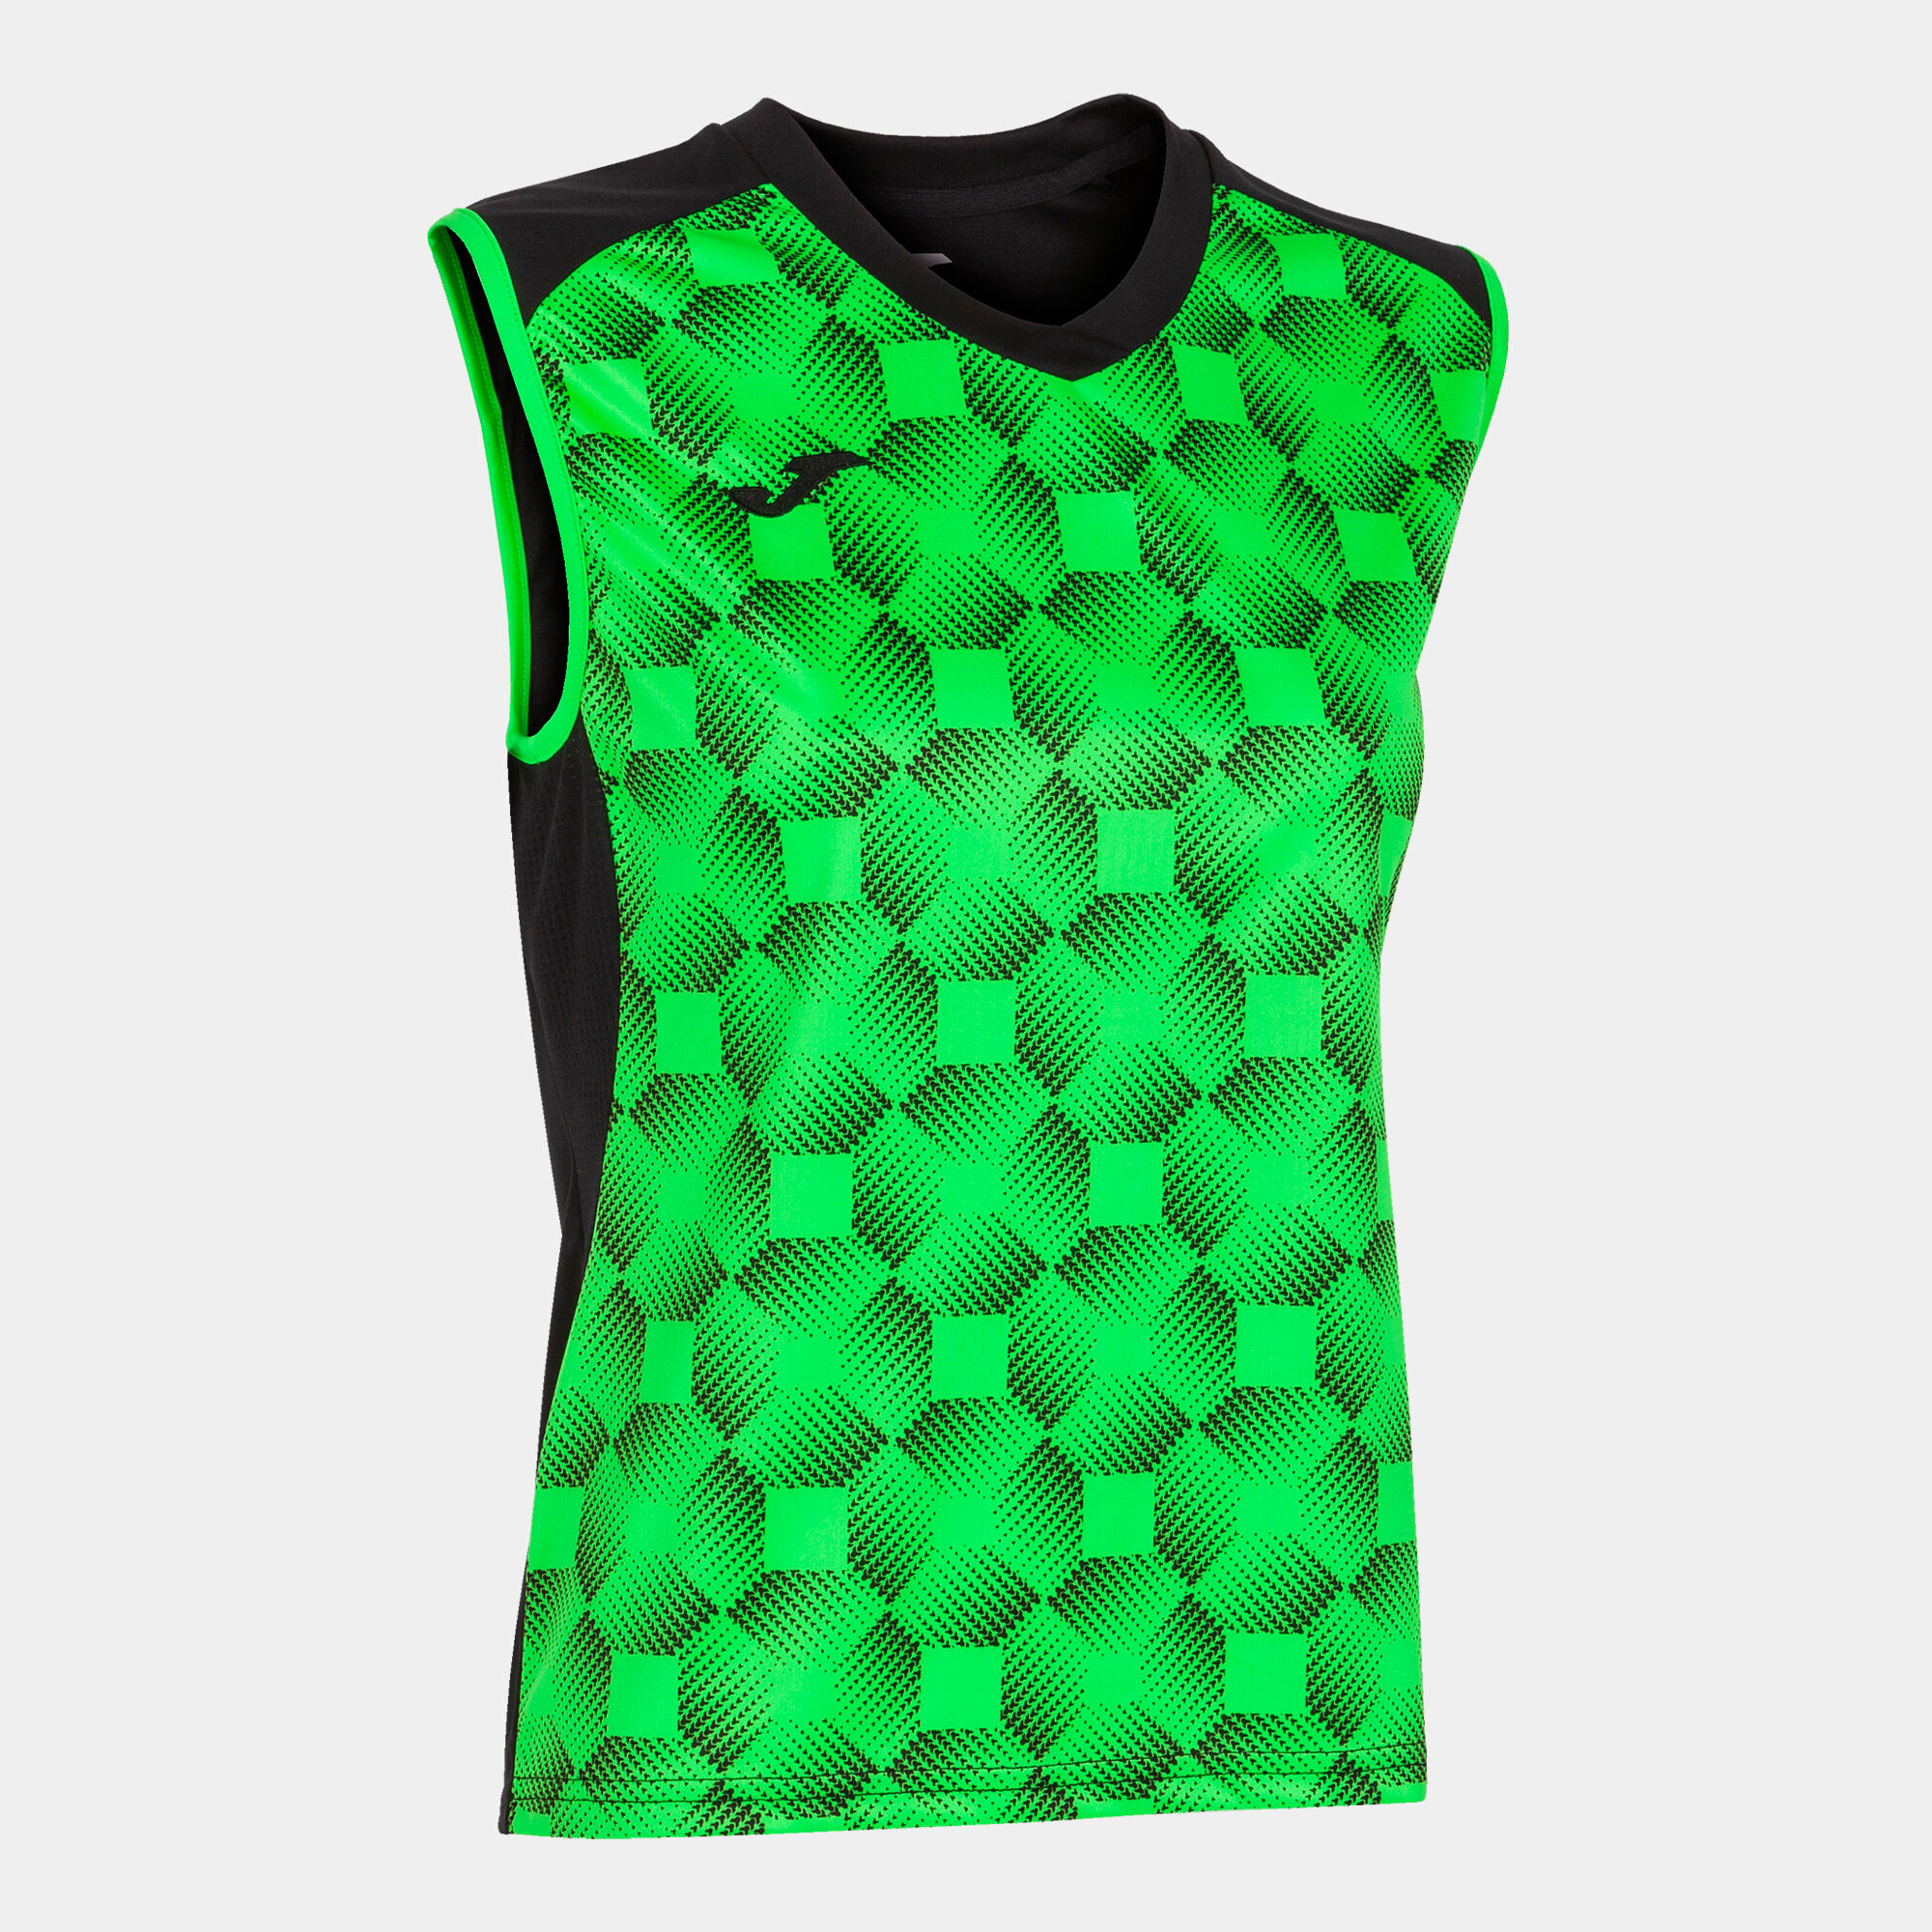 Koszulka bez rękawów kobiety Supernova III czarny fluorescencyjny zielony